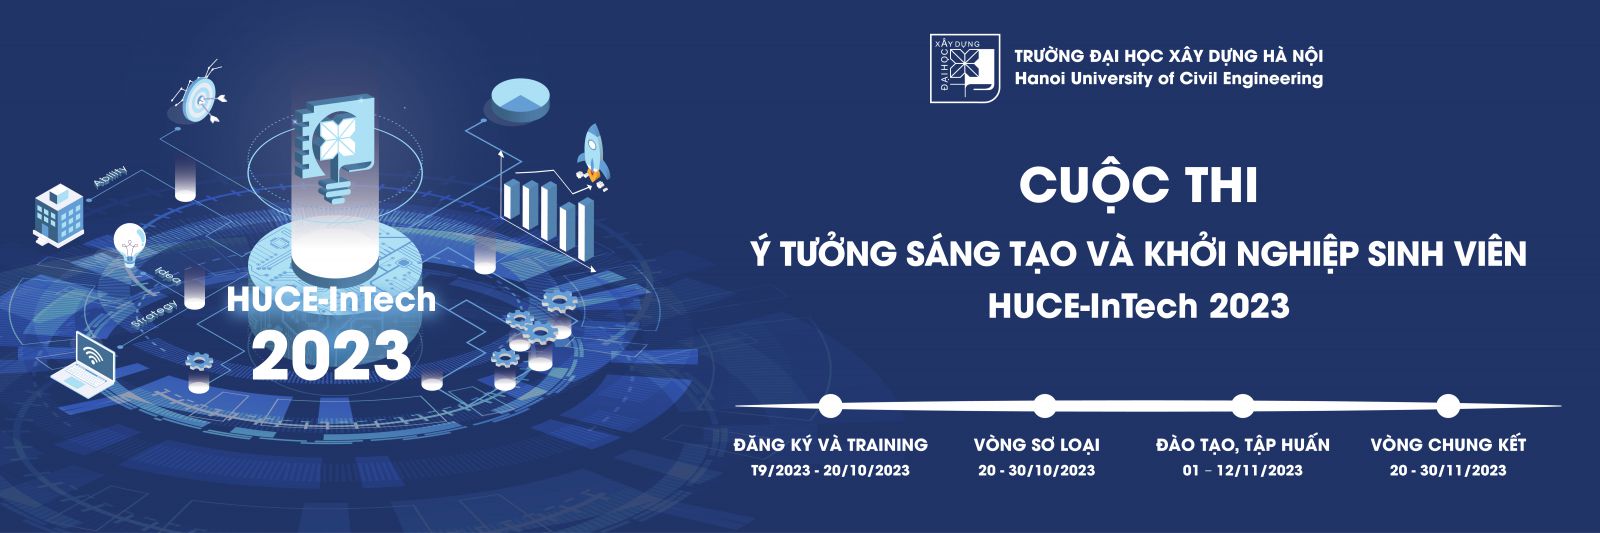 Tổ chức Cuộc thi Ý tưởng Sáng tạo và Khởi nghiệp sinh viên, HUCE-Intech 2023